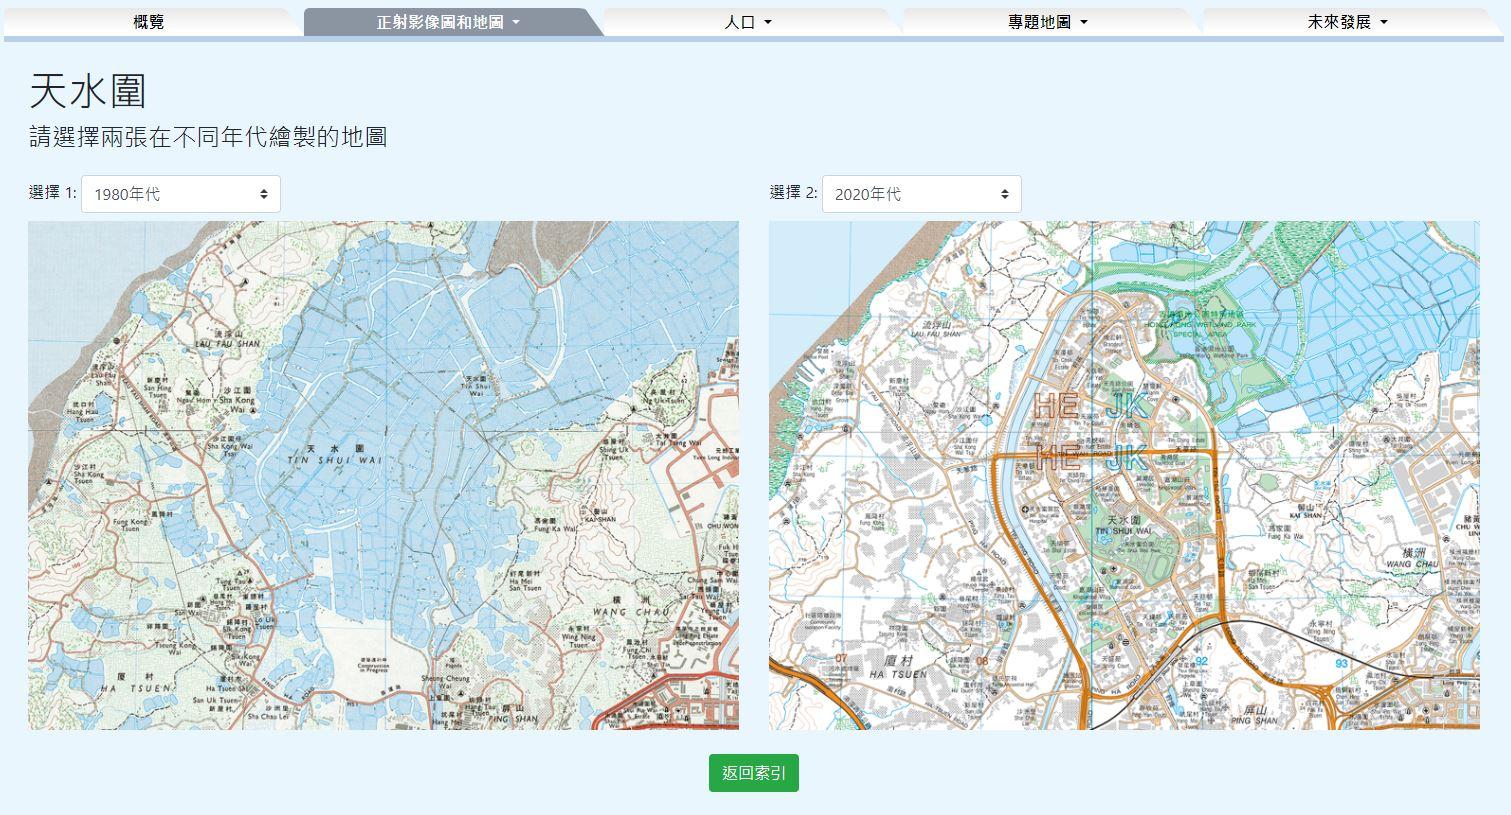 二○二四年《e香港街》今日（一月二十四日）起可免費下載。全新的互動故事地圖展示香港北部都會區三個新市鎮的地貌變化。